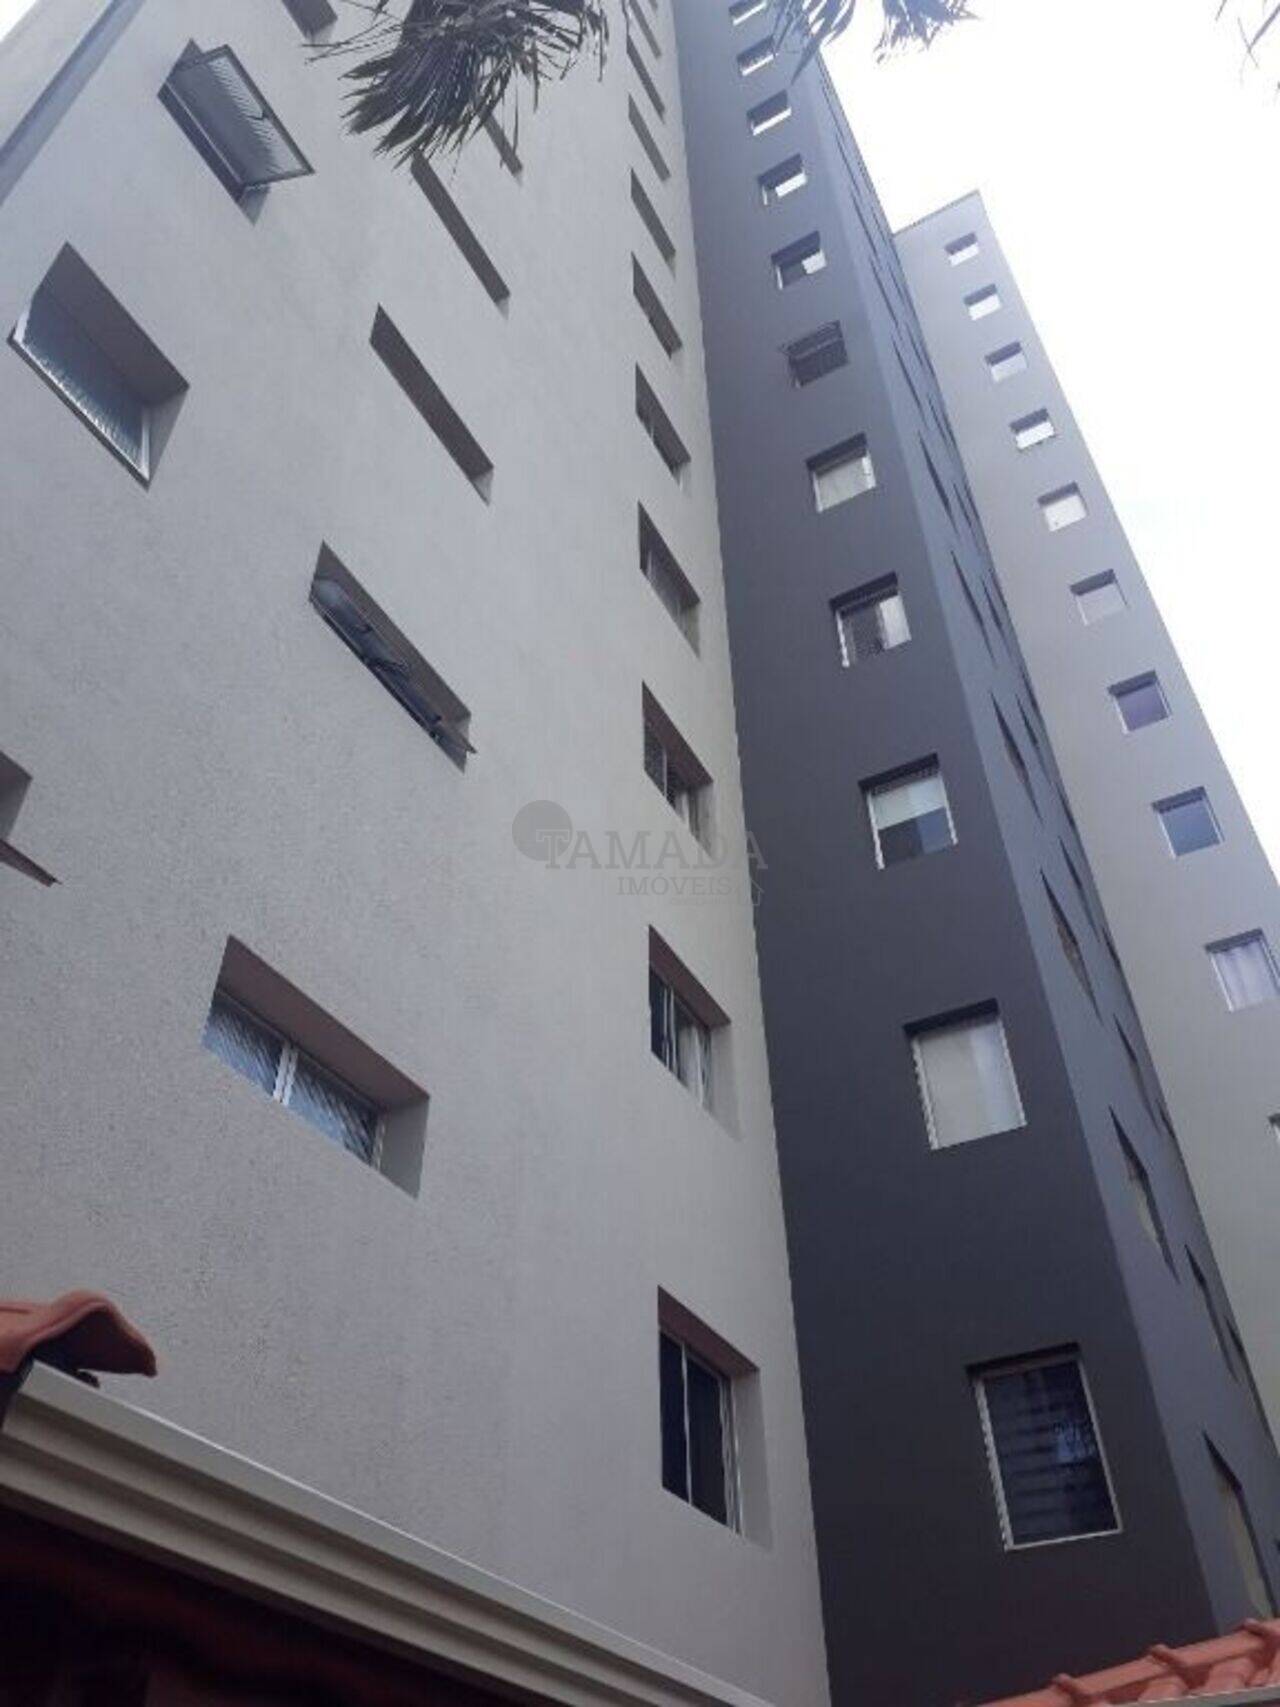 Apartamento Vila Nova Savoia, São Paulo - SP